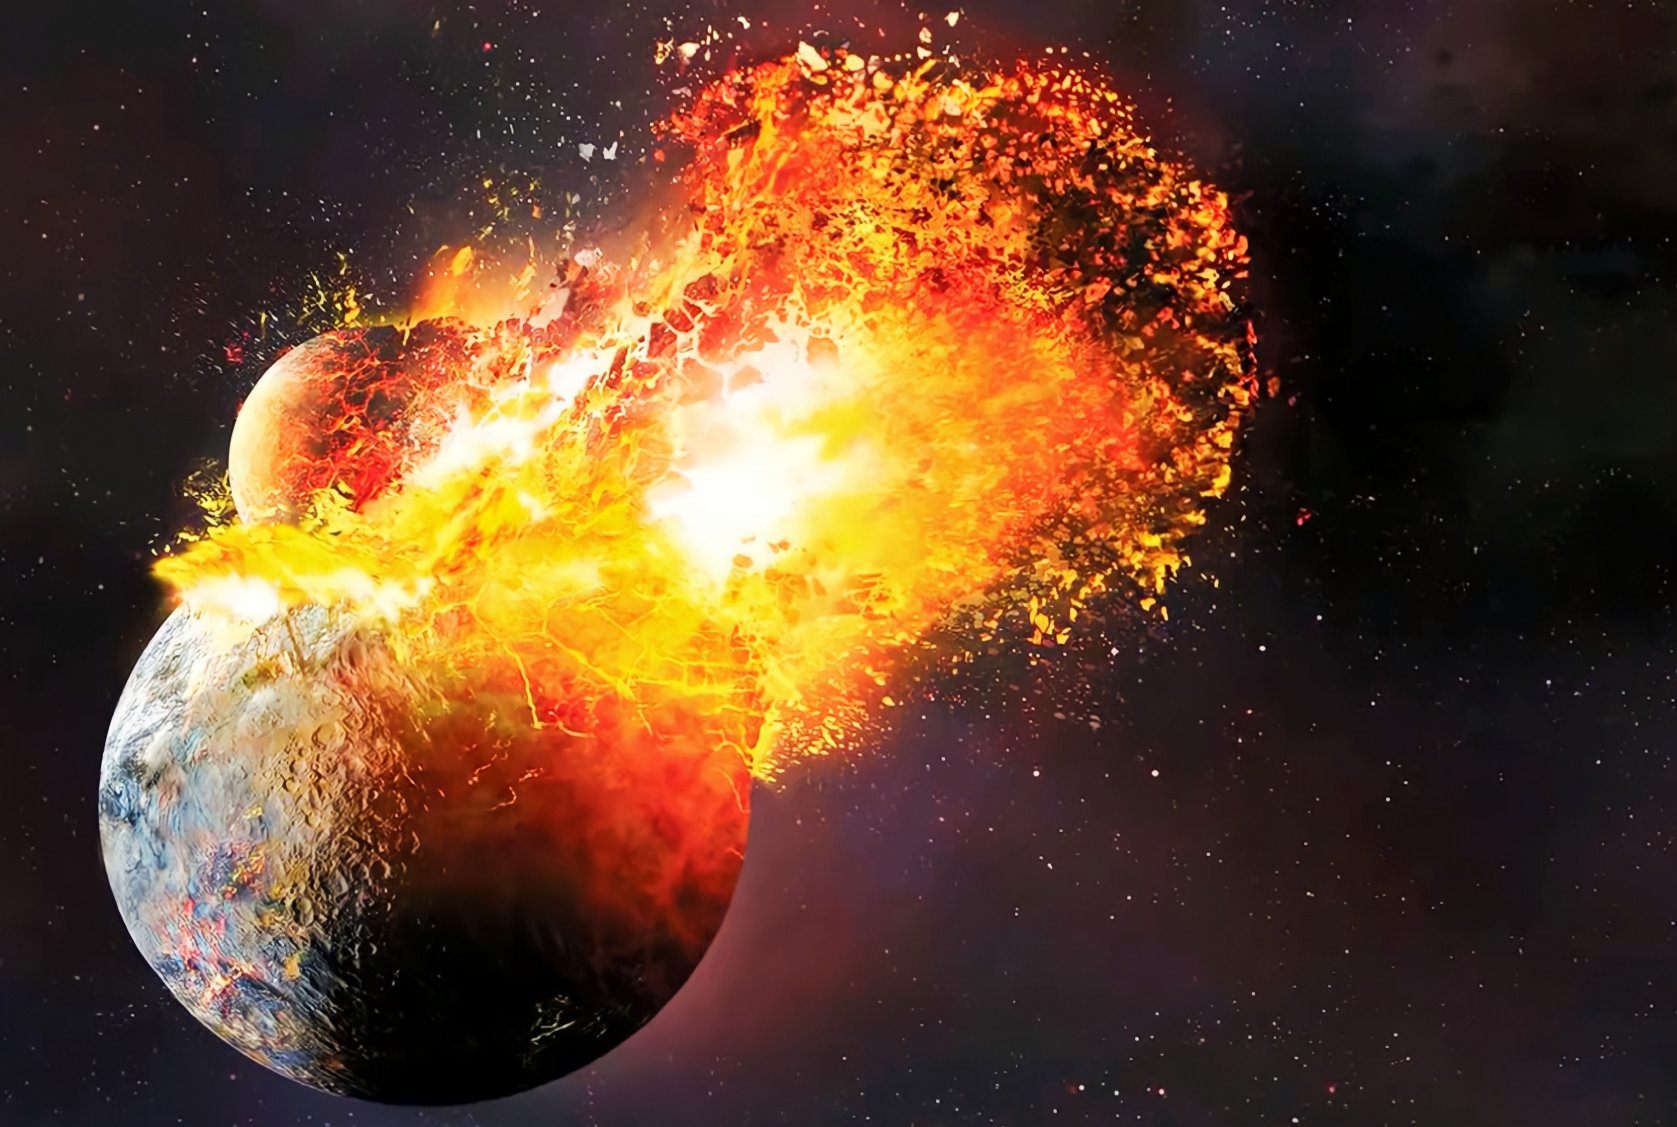 चंद्रावर पृथ्वीवरील 4 अब्ज वर्ष जुना खडक सापडला: सिद्धांतवादी काय म्हणतात? 2